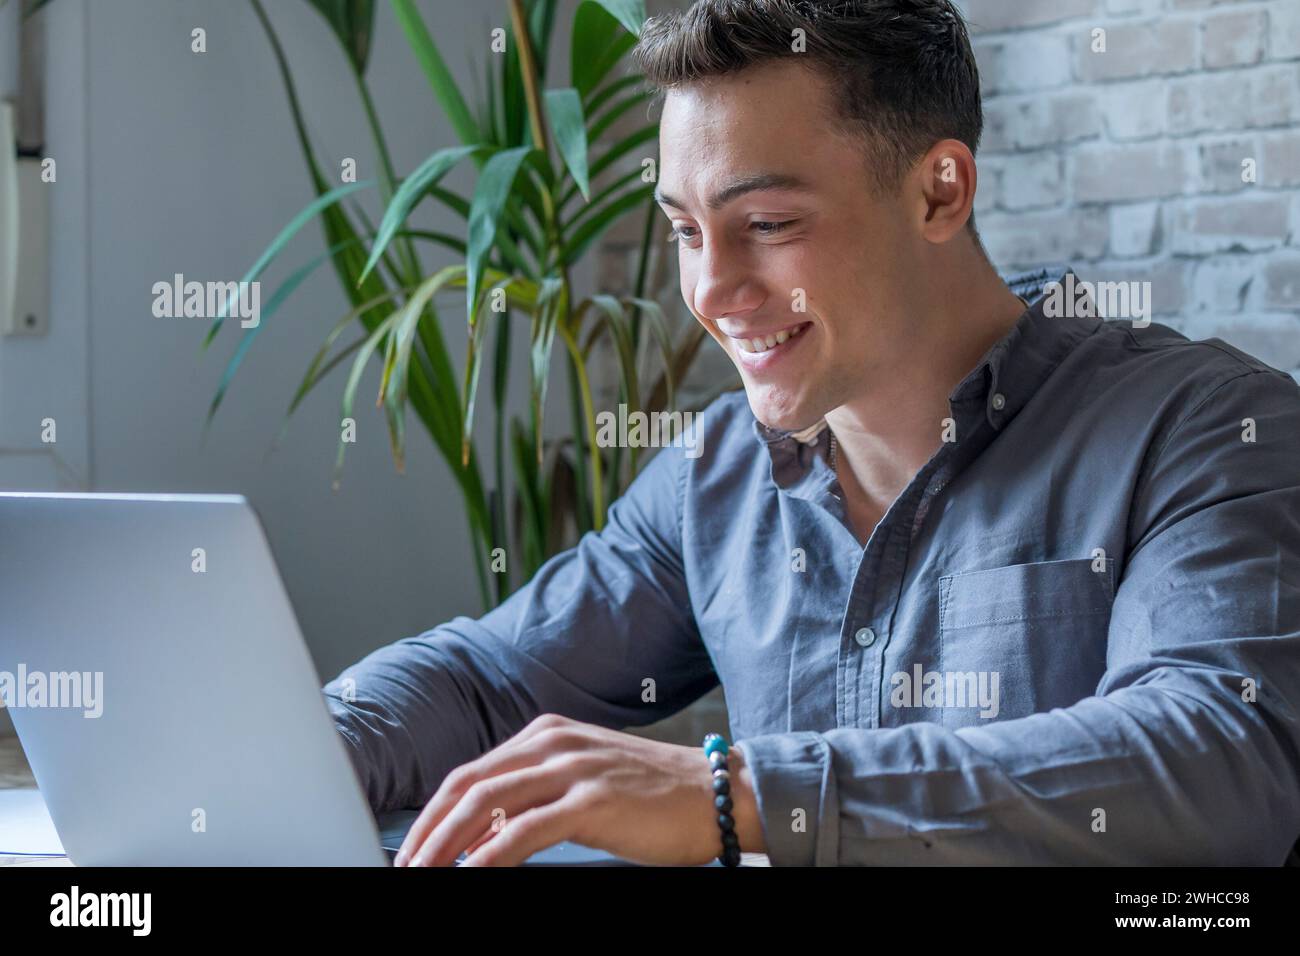 Vue latérale beau jeune homme d'affaires dans les lunettes travaillant avec l'ordinateur à distance, assis à la table en bois dans le bureau. Homme heureux agréable communiquant dans le réseau social, recherche d'informations en ligne. Banque D'Images